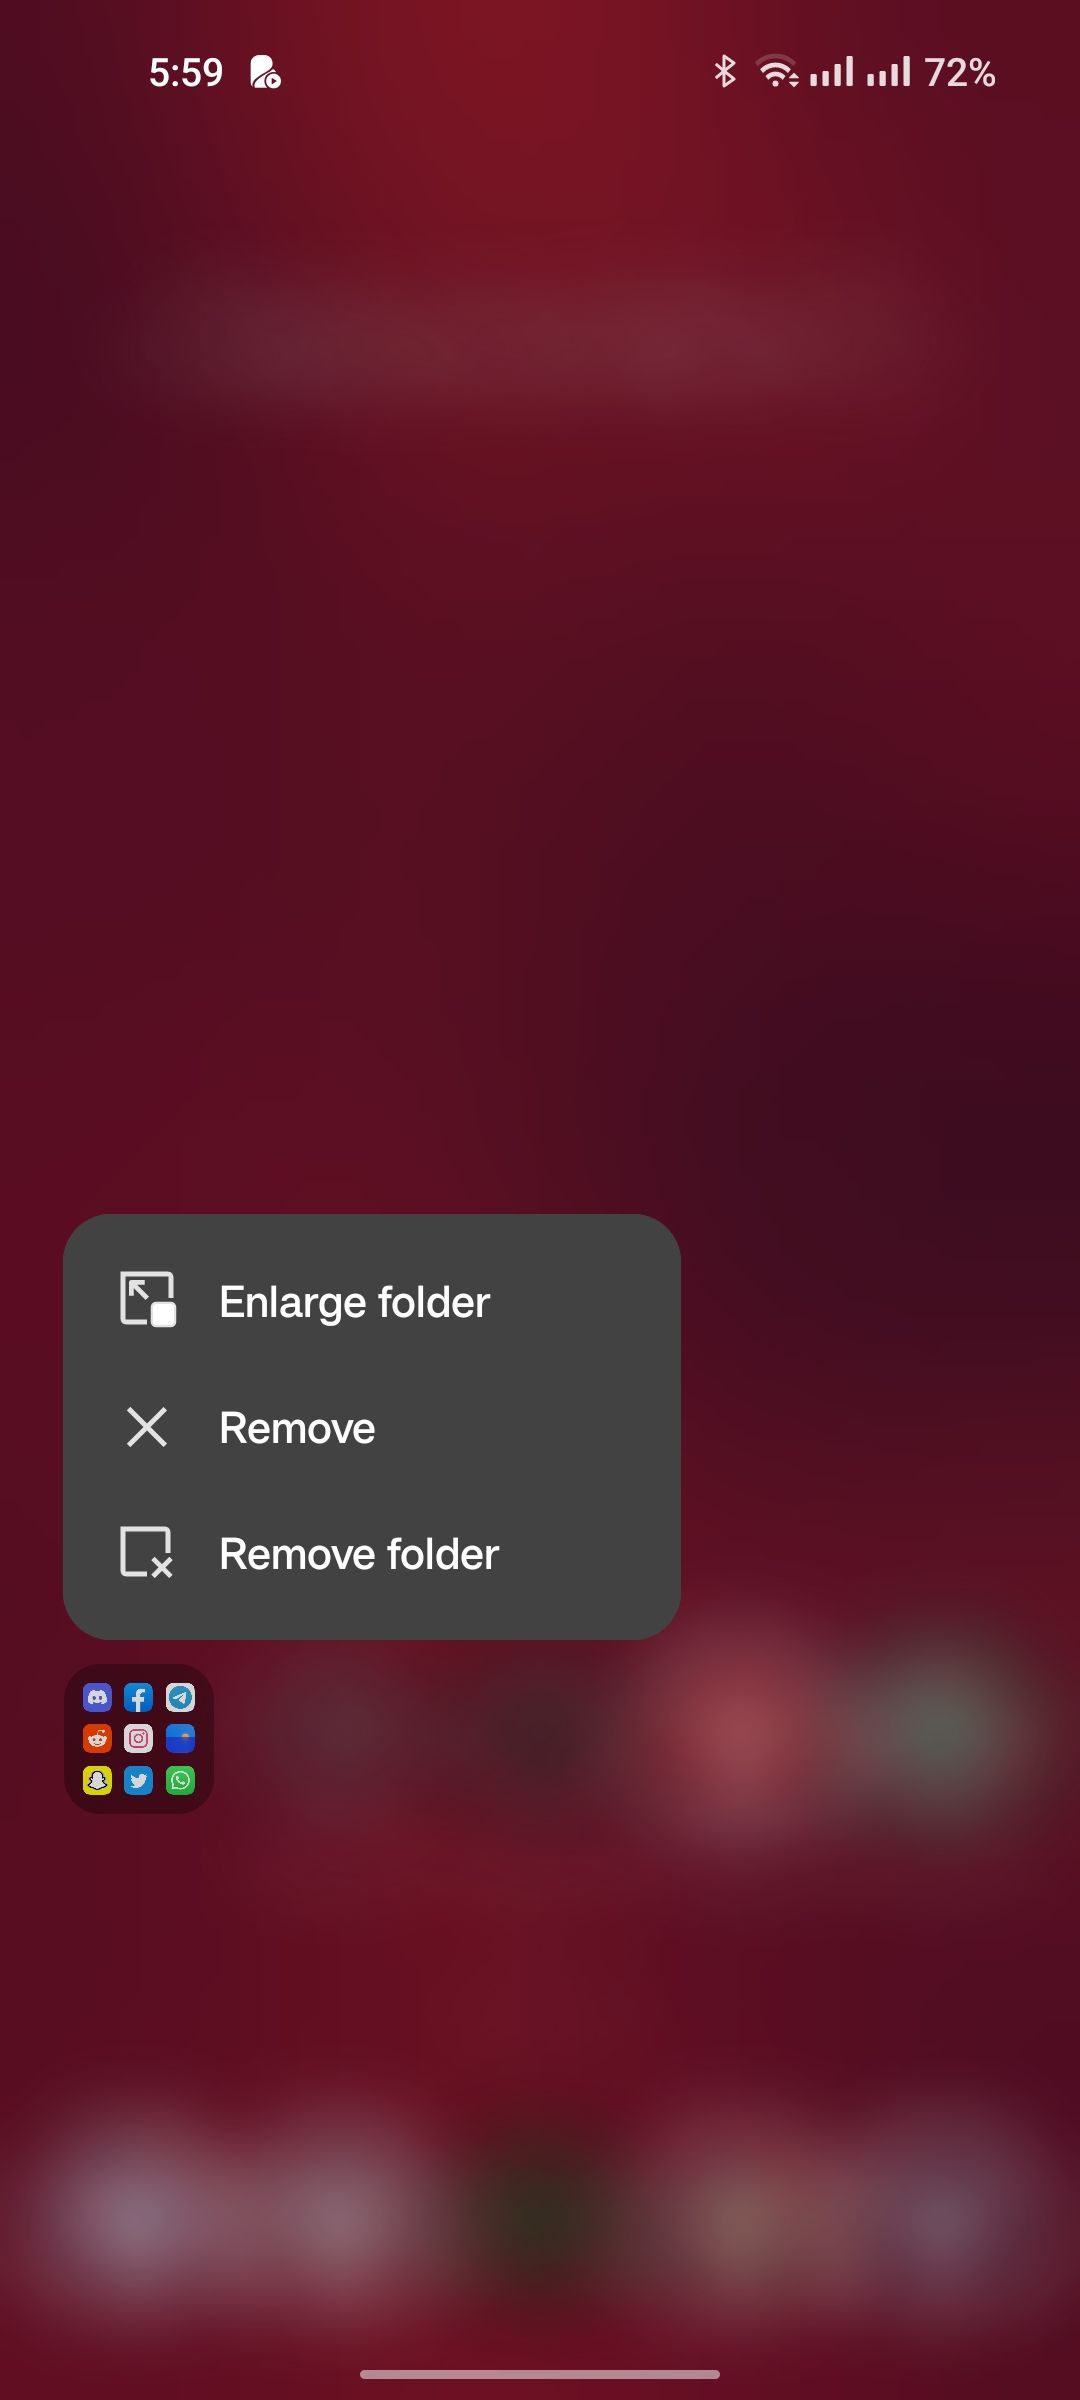 Option to enlarge a folder